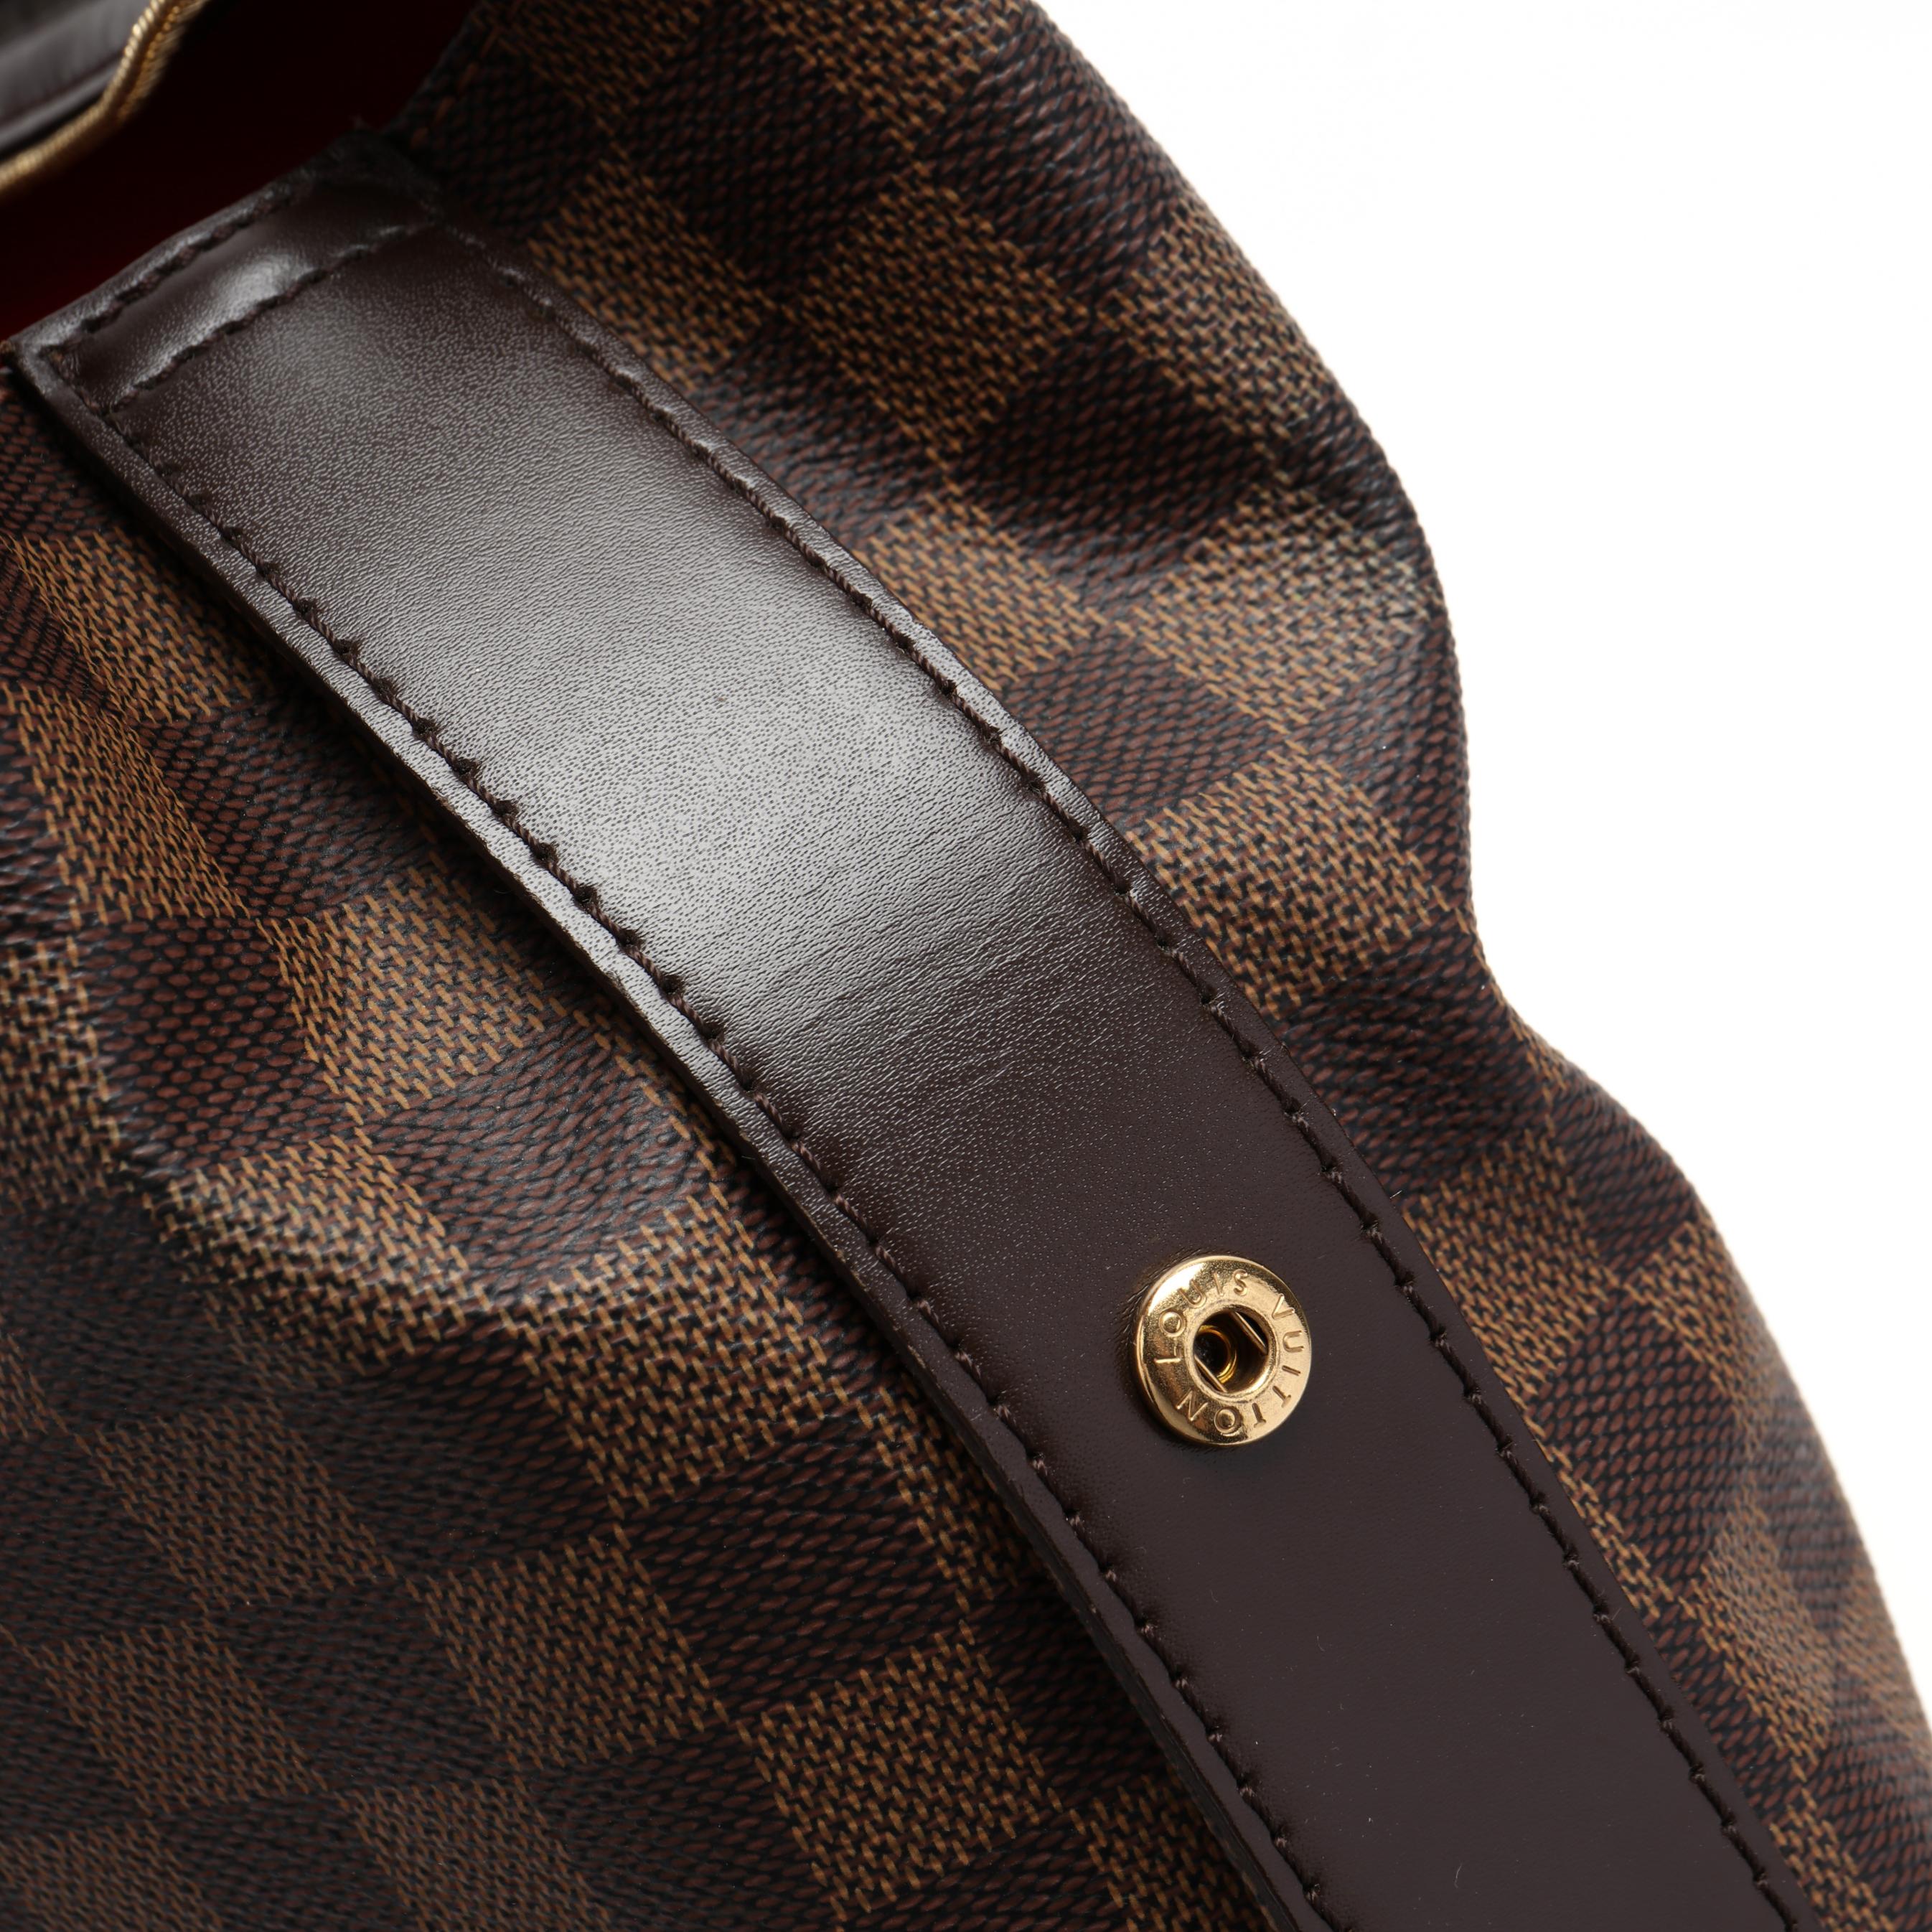 Louis Vuitton Damier Ebene Chelsea Shoulder Bag – Timeless Vintage